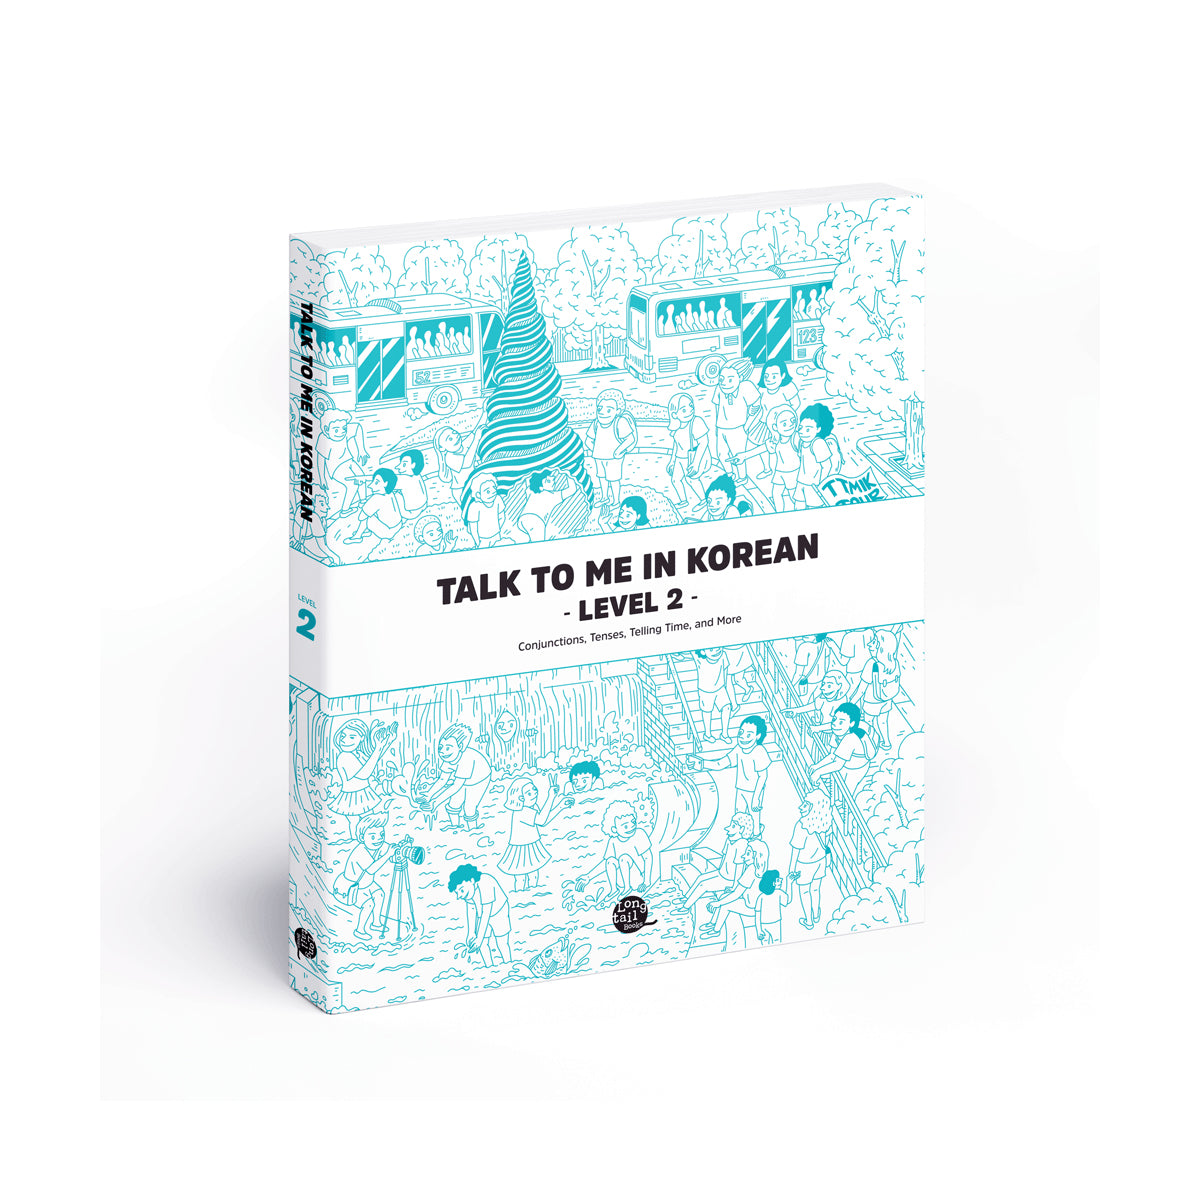 Talk to me in Korean Level 2 Textbook freeshipping - K-ZONE STUDIO